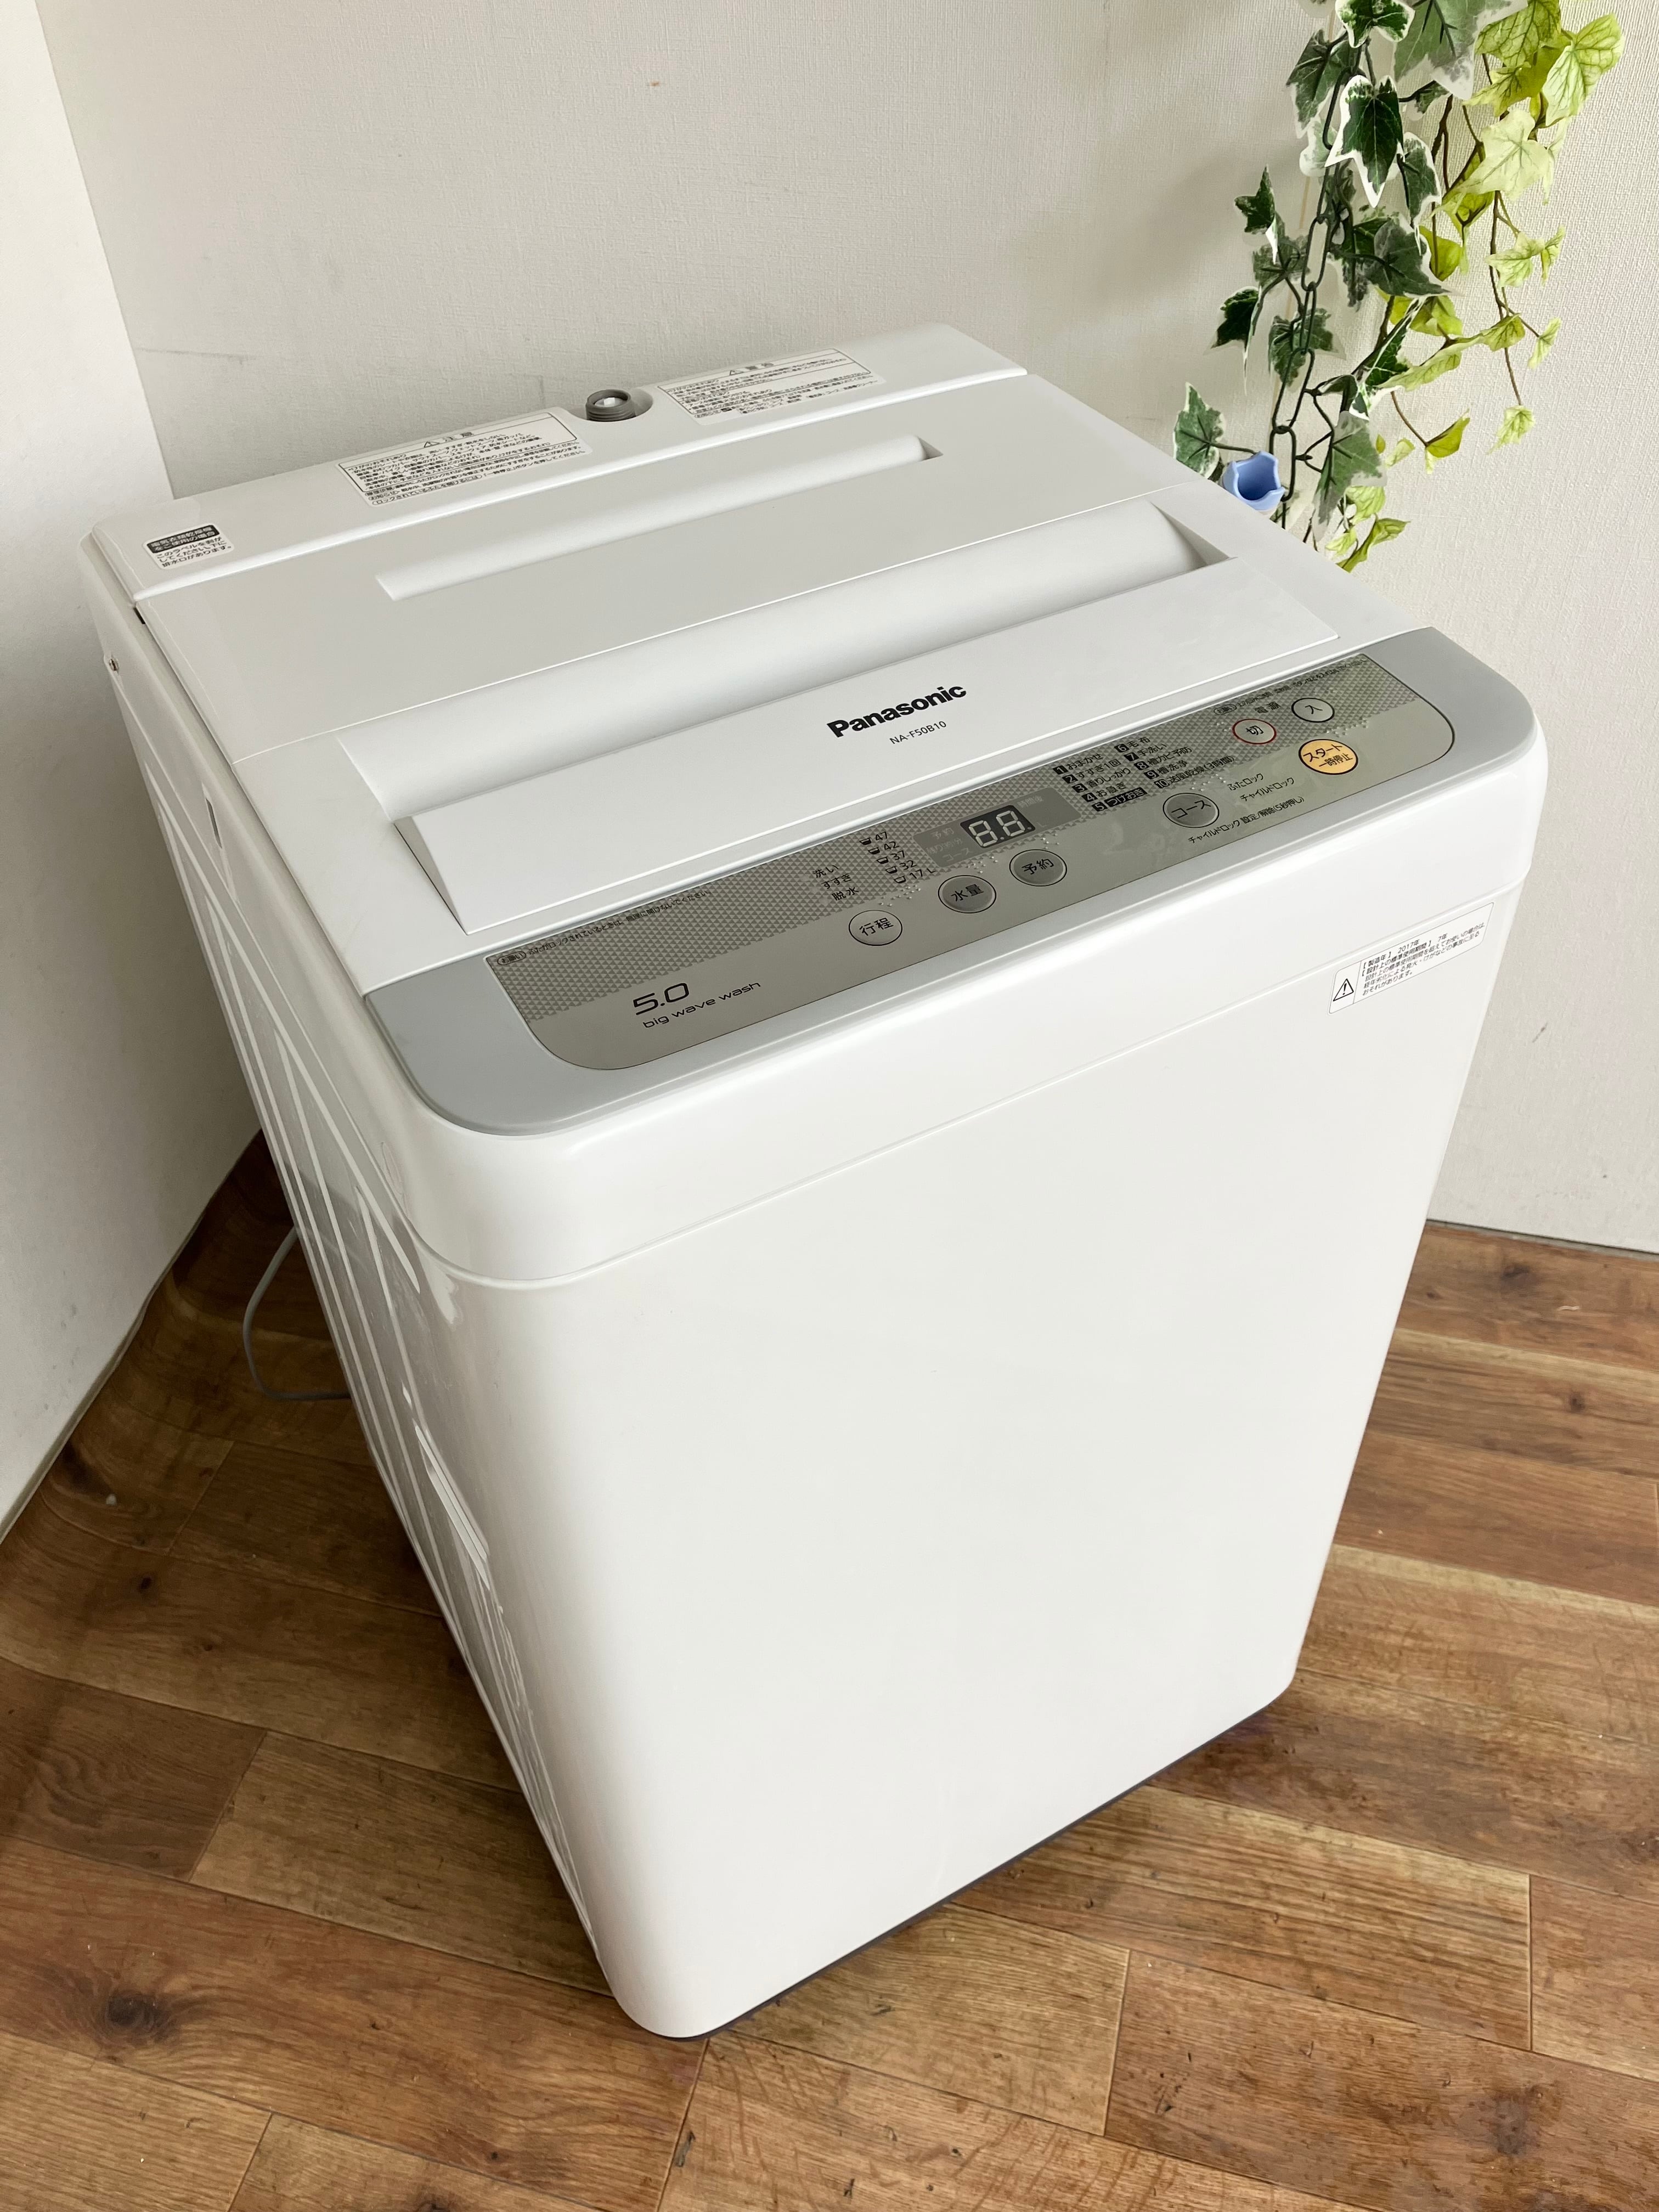 2017年製 5.0kg Panasonic 洗濯機 | 中村区亀島リサイクルショップ